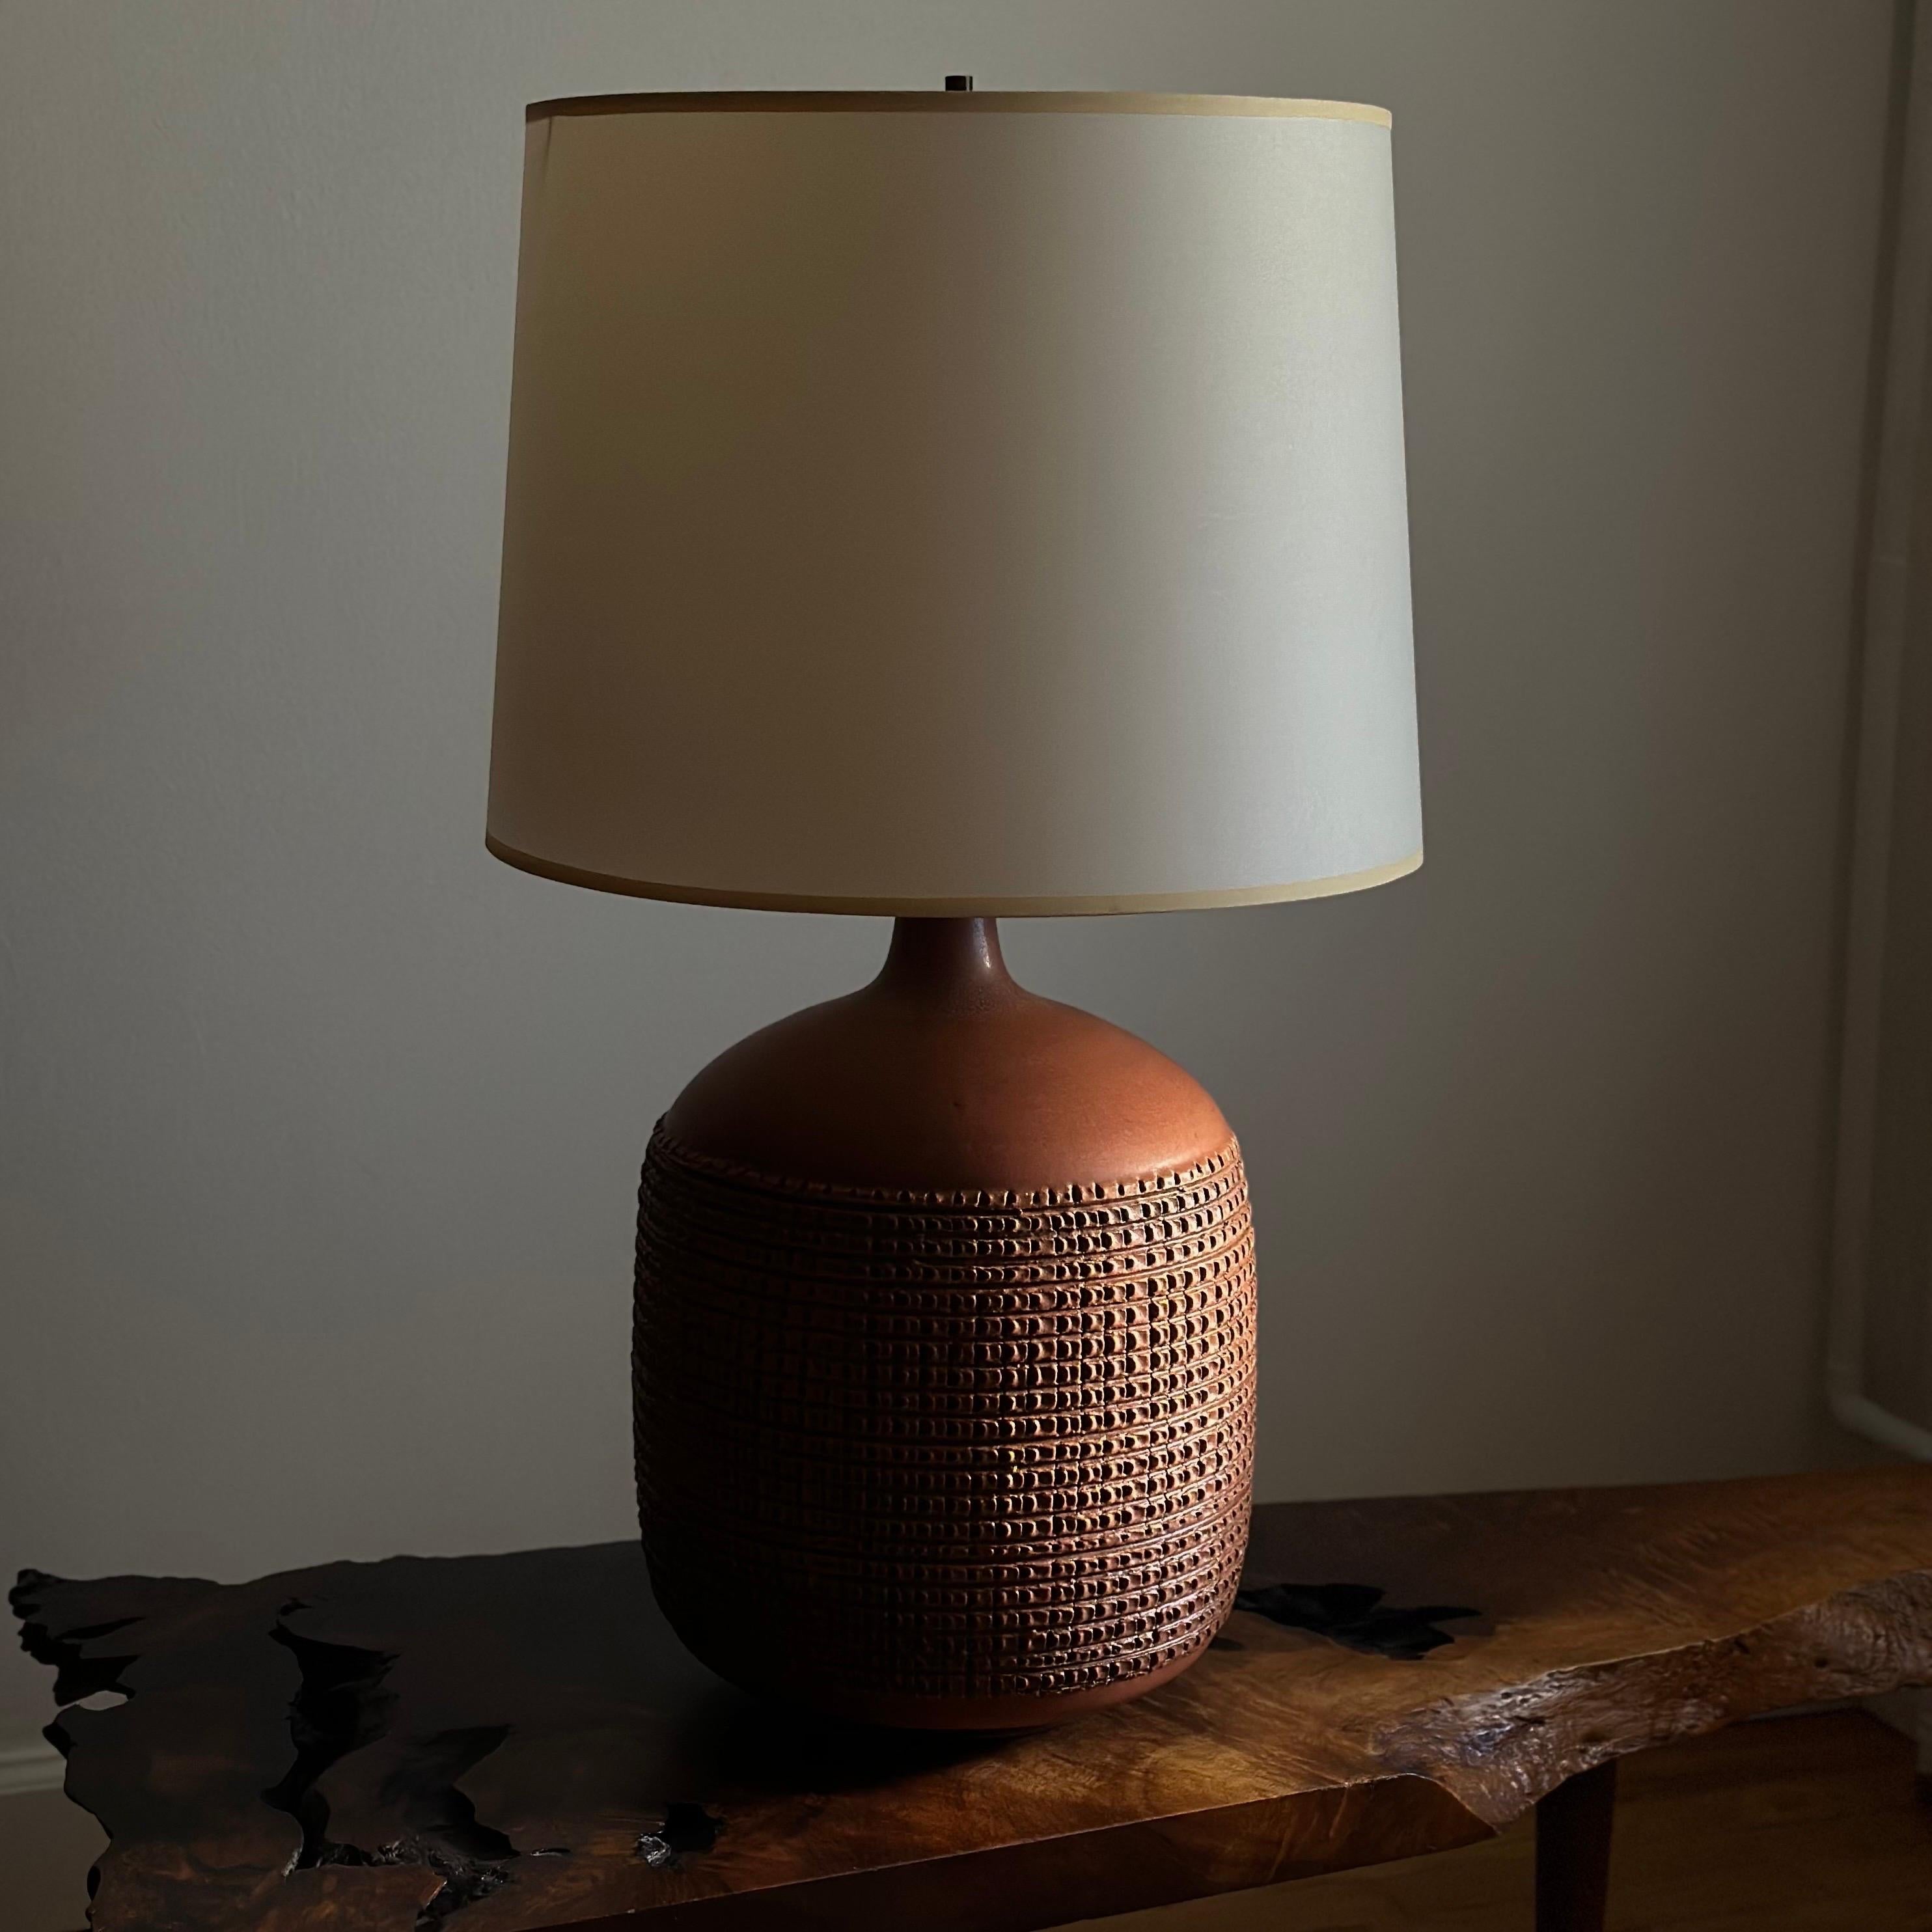 Lampe de table en céramique moulée à la main avec un motif de hachures profondément incisé, conçue par Lee Rosen pour Design Technics. Signé au dos avec le chiffre 